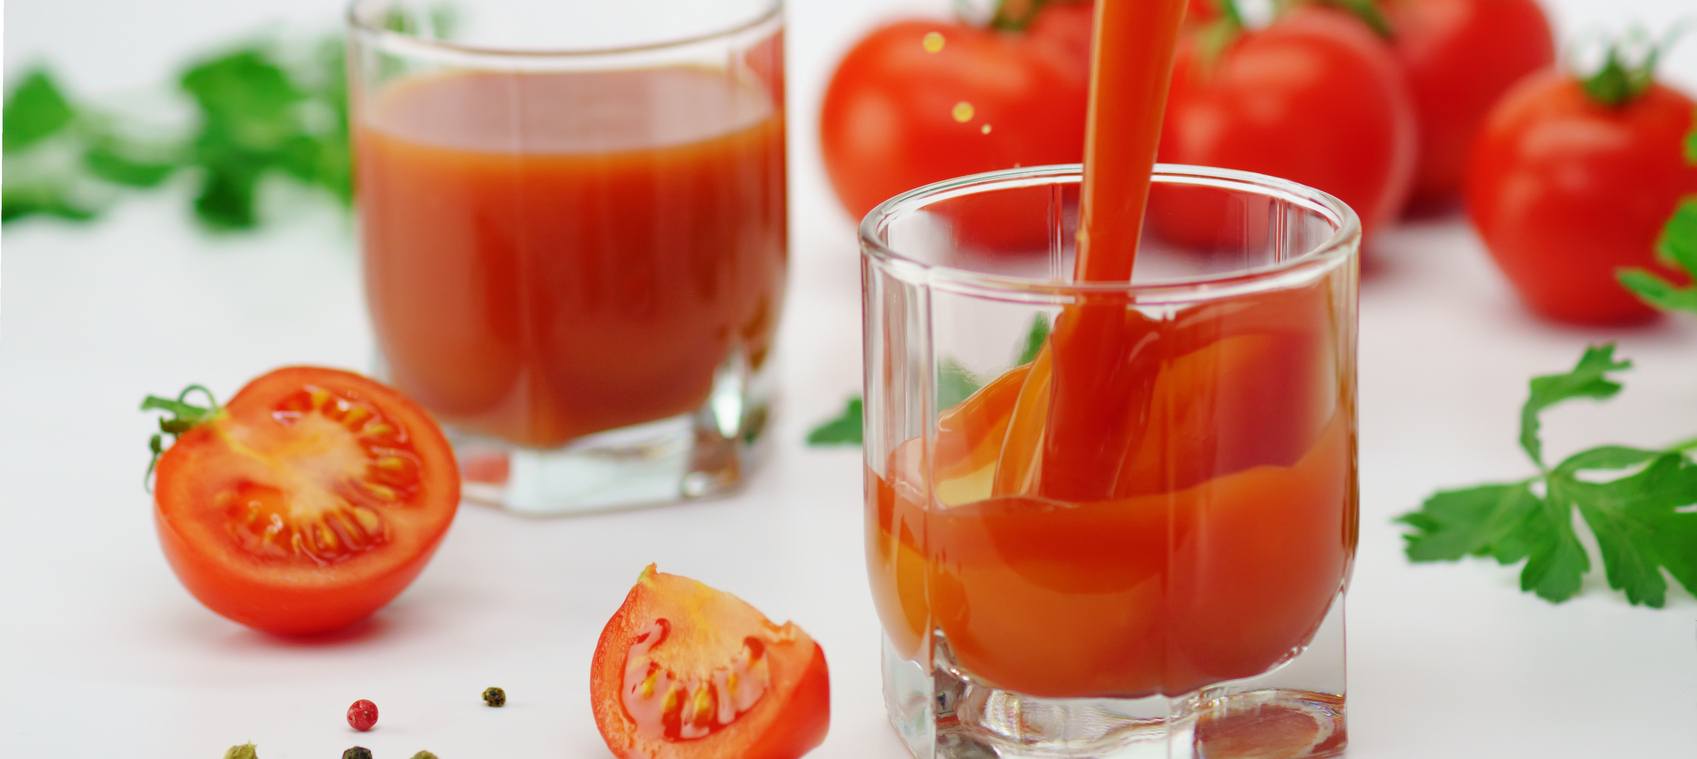 Tomato Juice and Bone Health